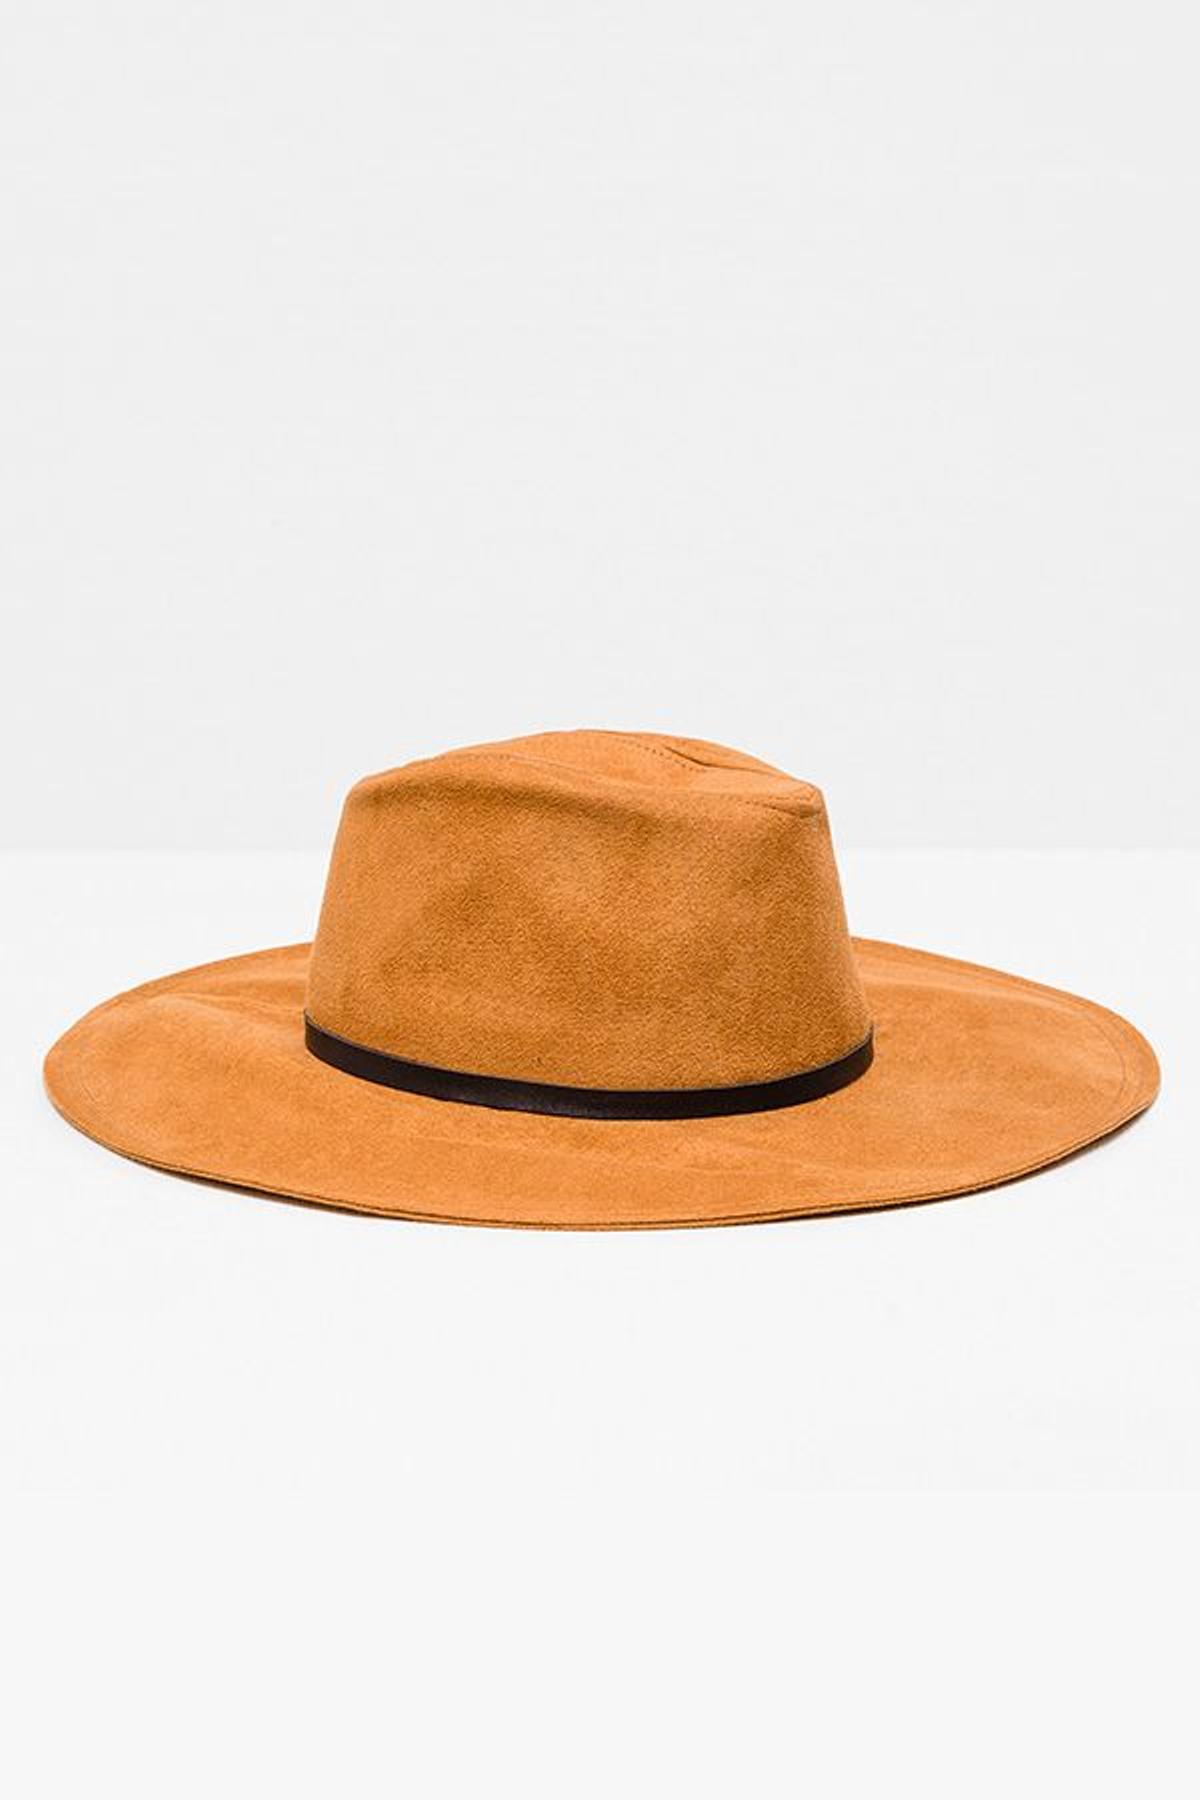 2. Un sombrero